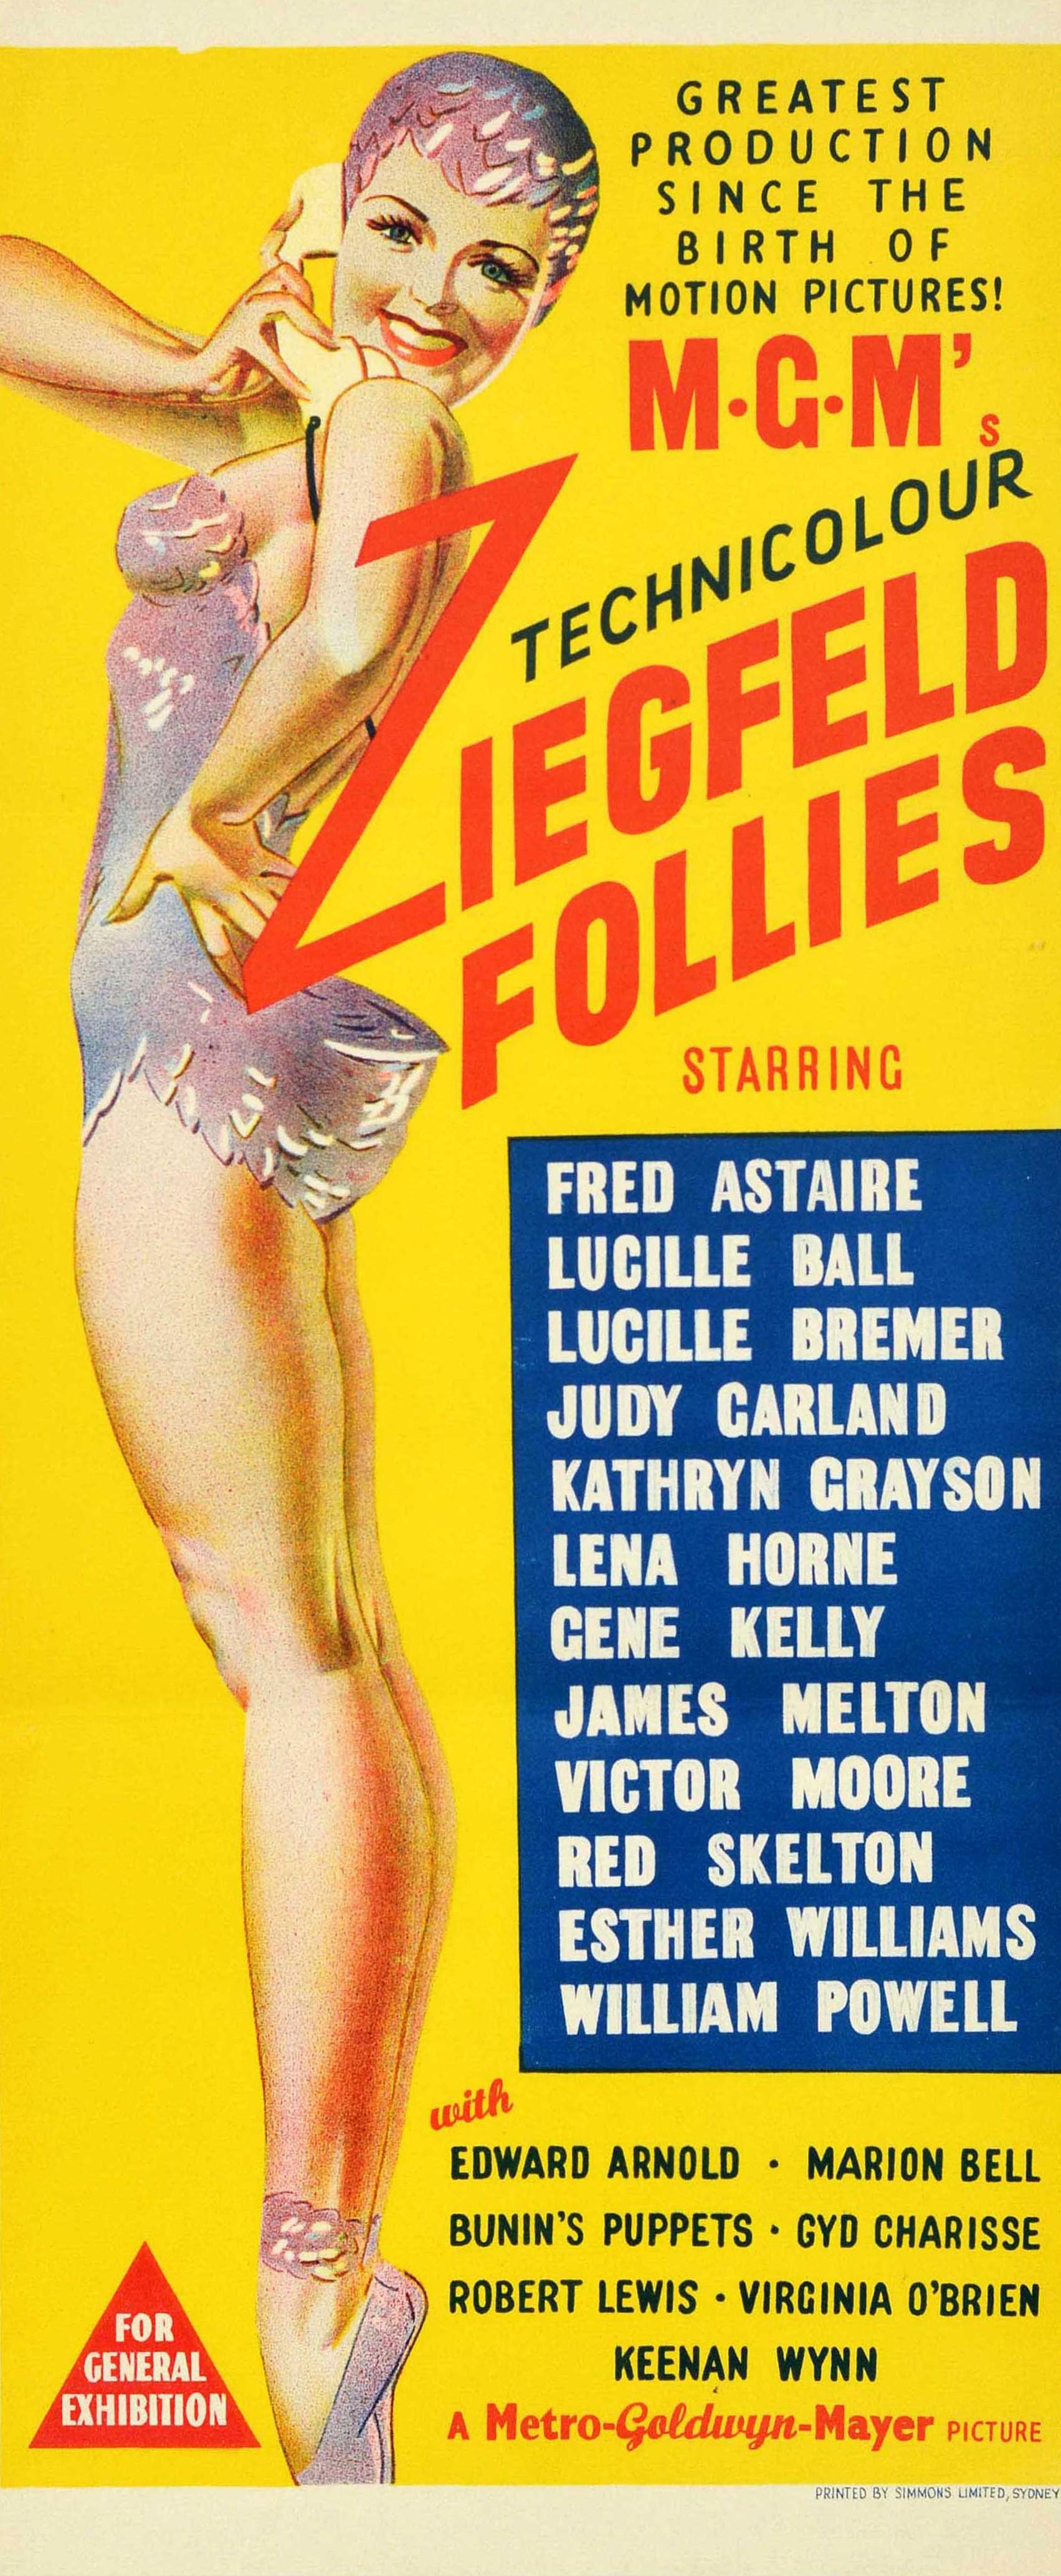 Affiche originale d'époque pour un film MGM en Technicolor - Ziegfeld Follies - la plus grande production depuis la naissance du cinéma ! avec une distribution de stars comprenant Fred Astaire, Judy Garland, Lucille Ball, Lucille Bremer, Gene Kelly